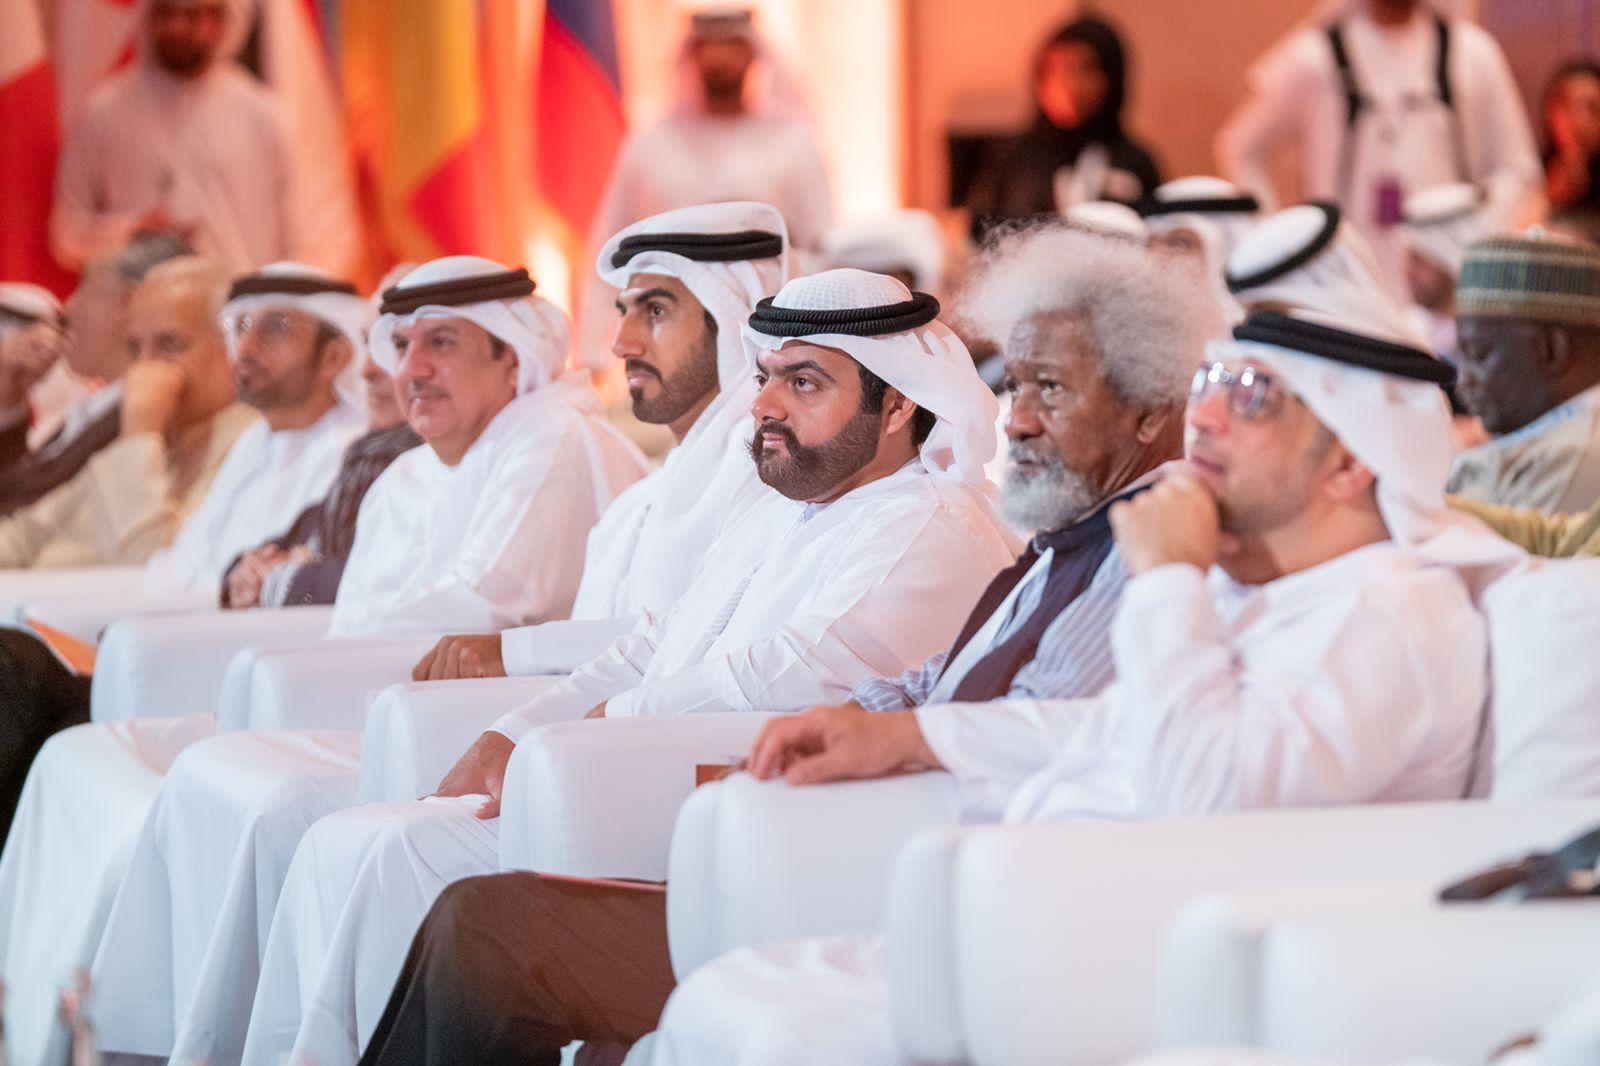 محمد الشرقي يشهد قمة المسرح أثناء انطلاق الكونغرس العالمي للهيئة الدولية للمسرح 